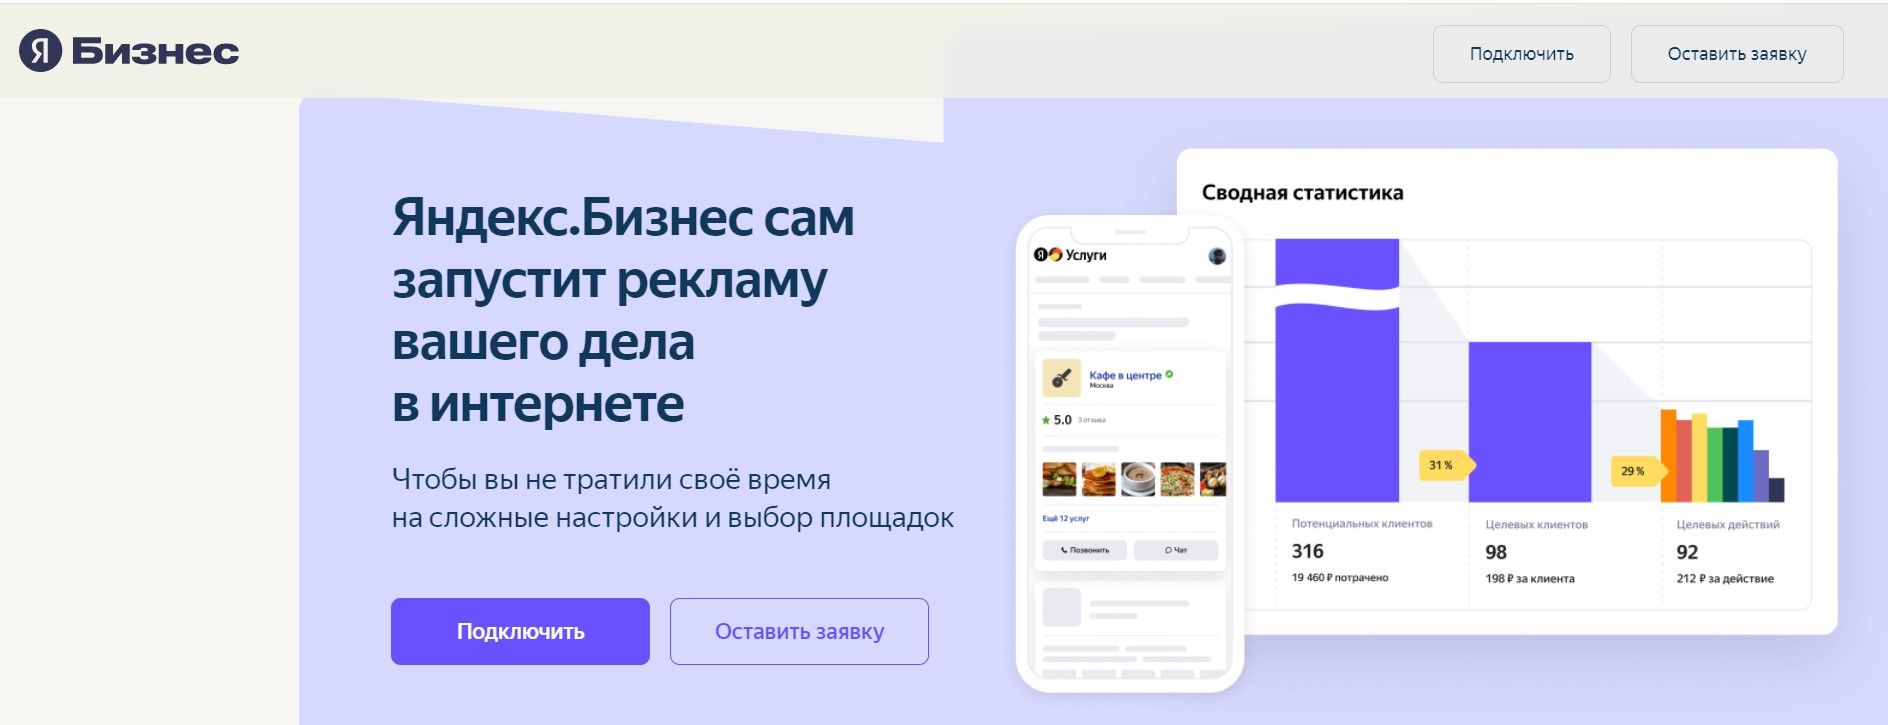 Яндекс.Бизнес нацелен продать вам рекламу, но есть возможности и помимо нее